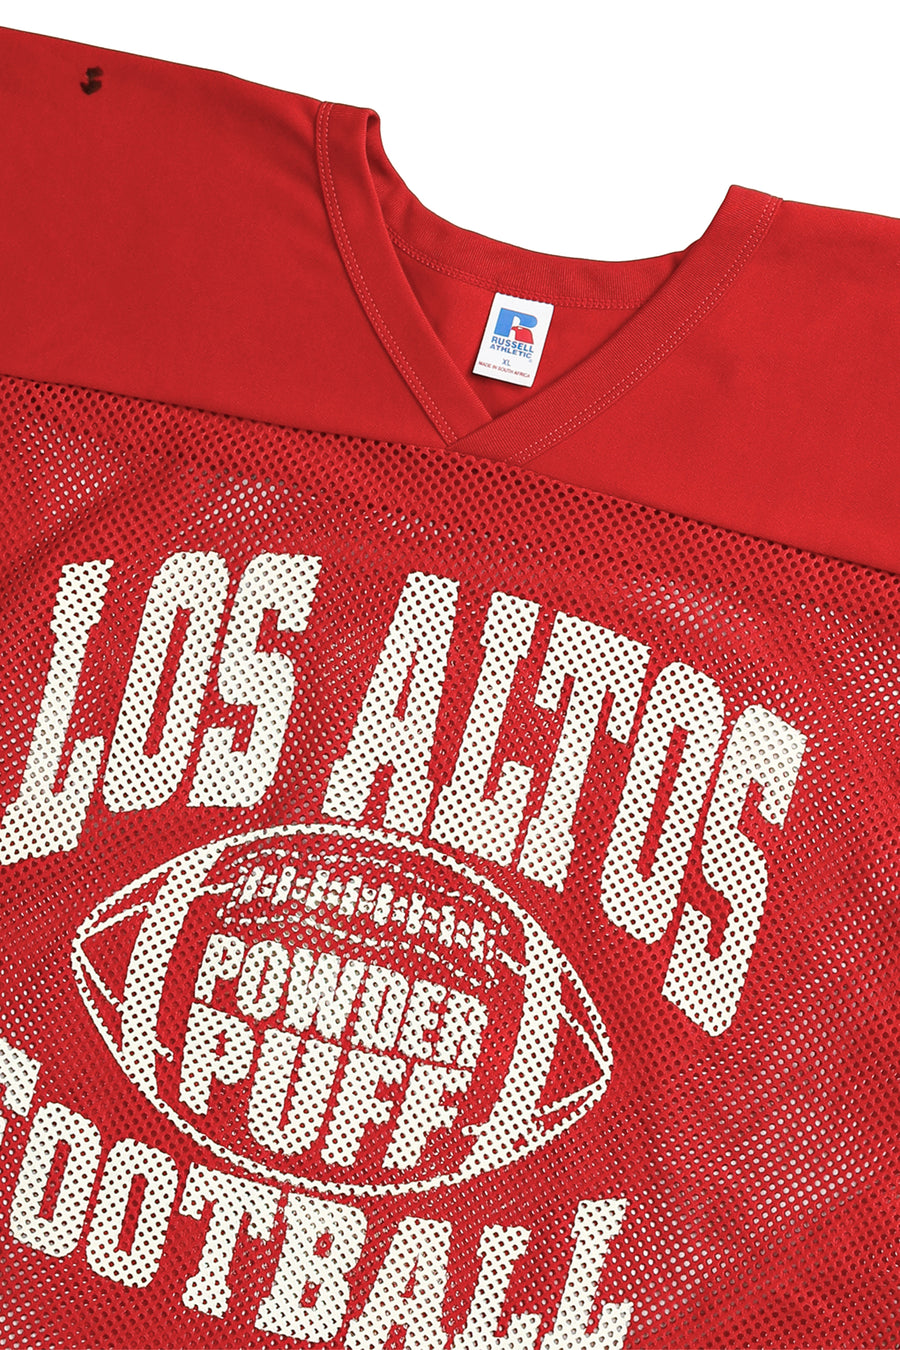 Vintage Los Altos Football Jersey - XL